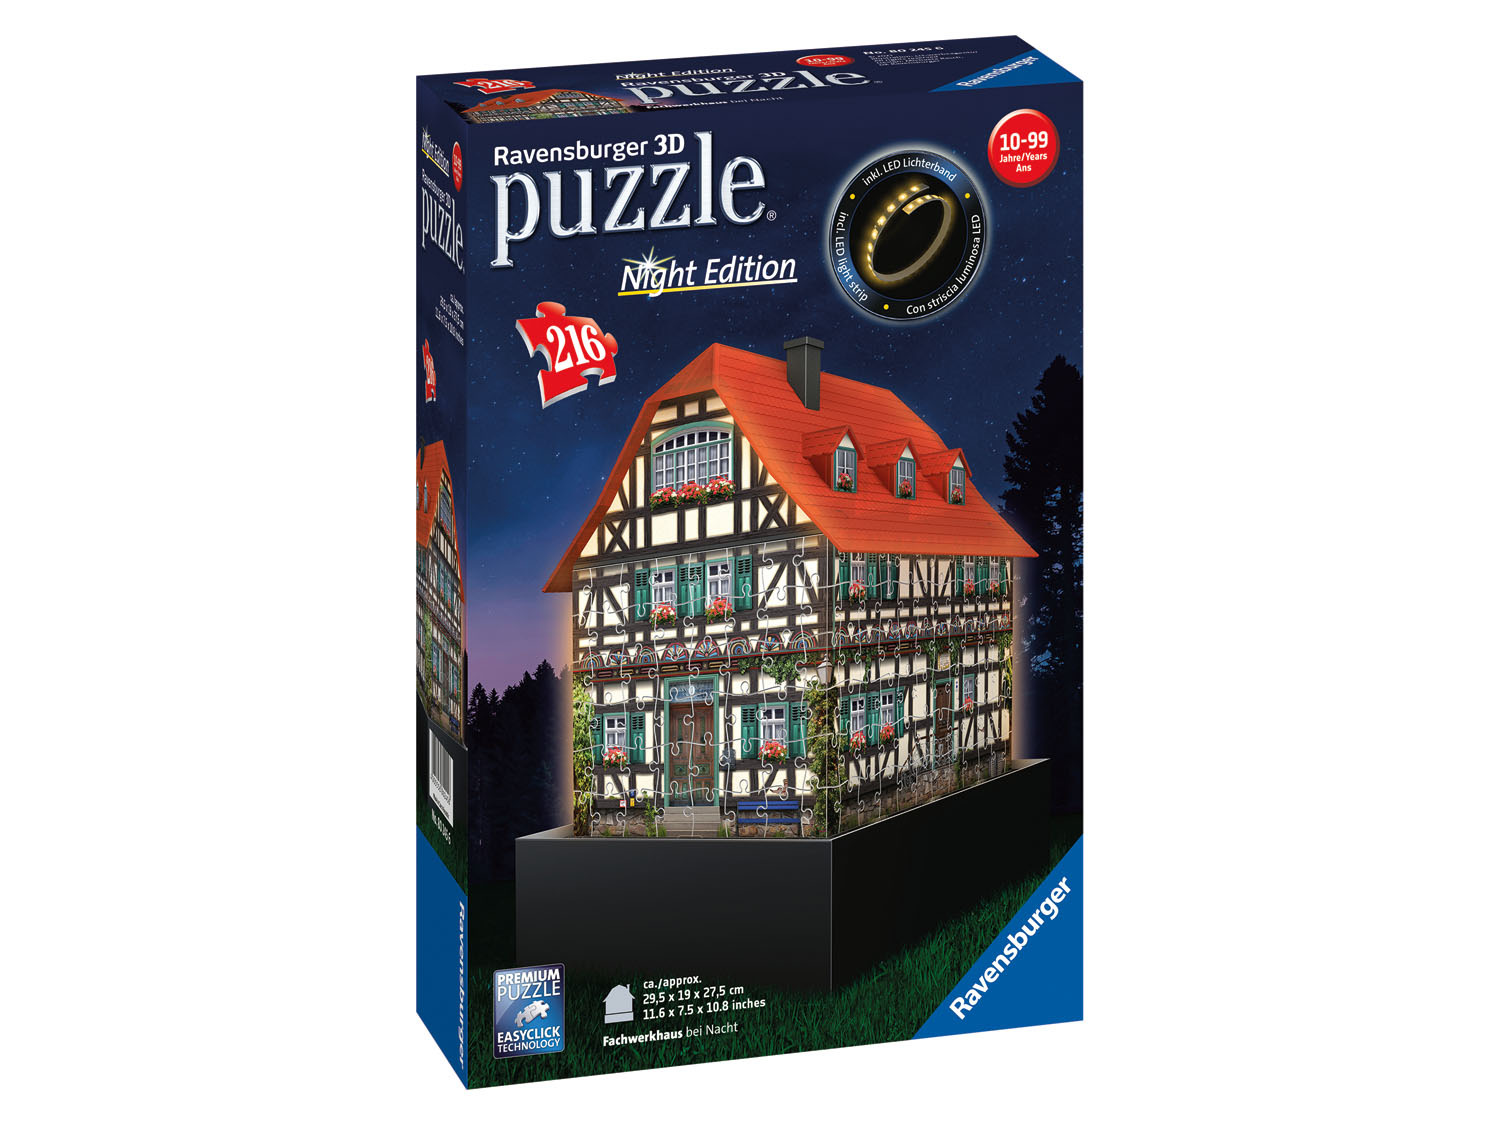 Ravensburger Puzzle 3D lumineux, 216 pièces